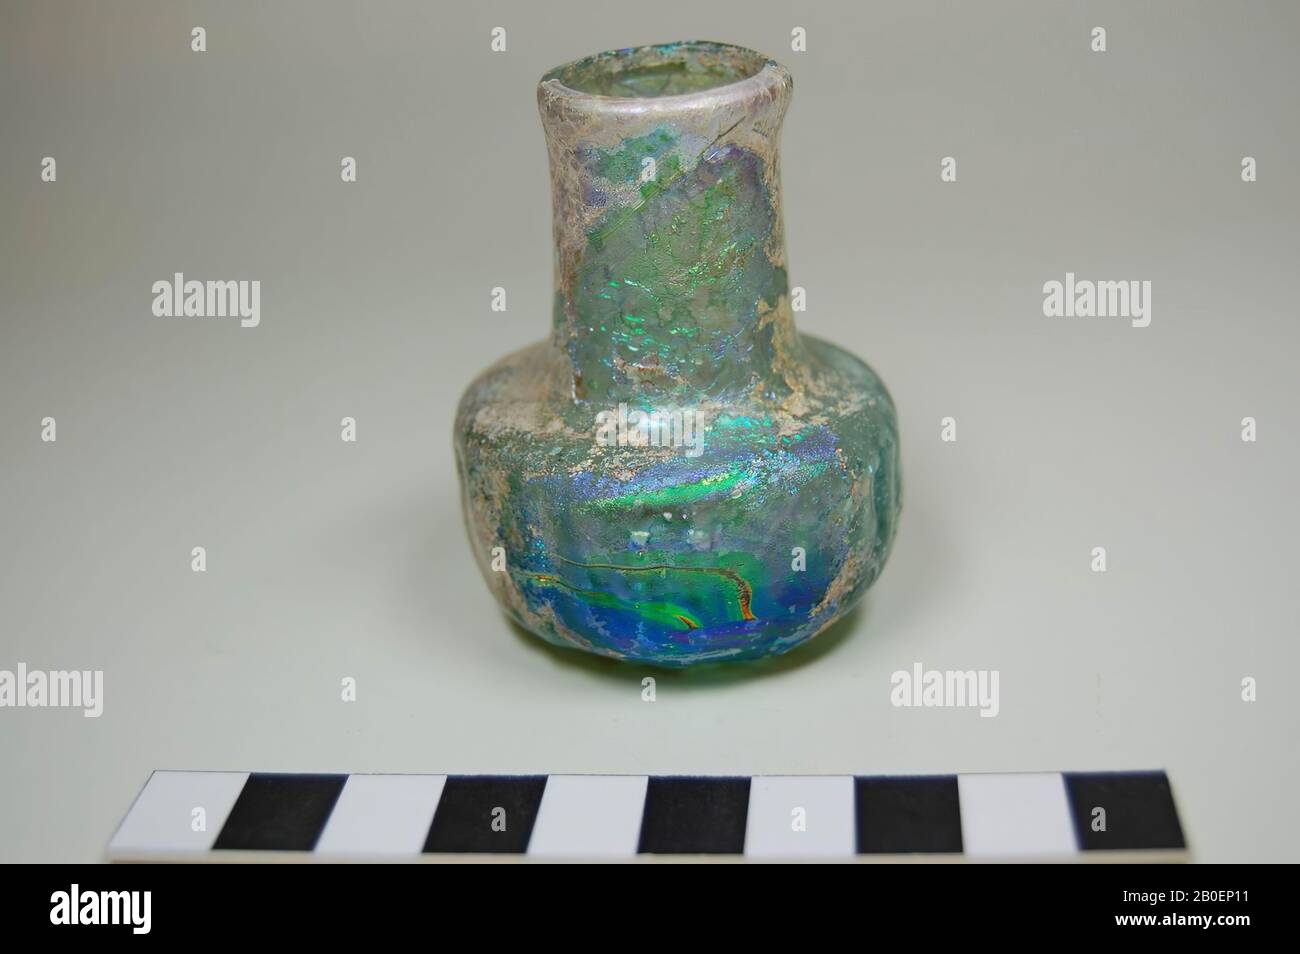 Flasche hellgrün schillerndes Glas. Flaches geripptes Gehäuse mit breitem zylindrischem Hals, Vase, Glas, 6 cm, Griechenland Stockfoto